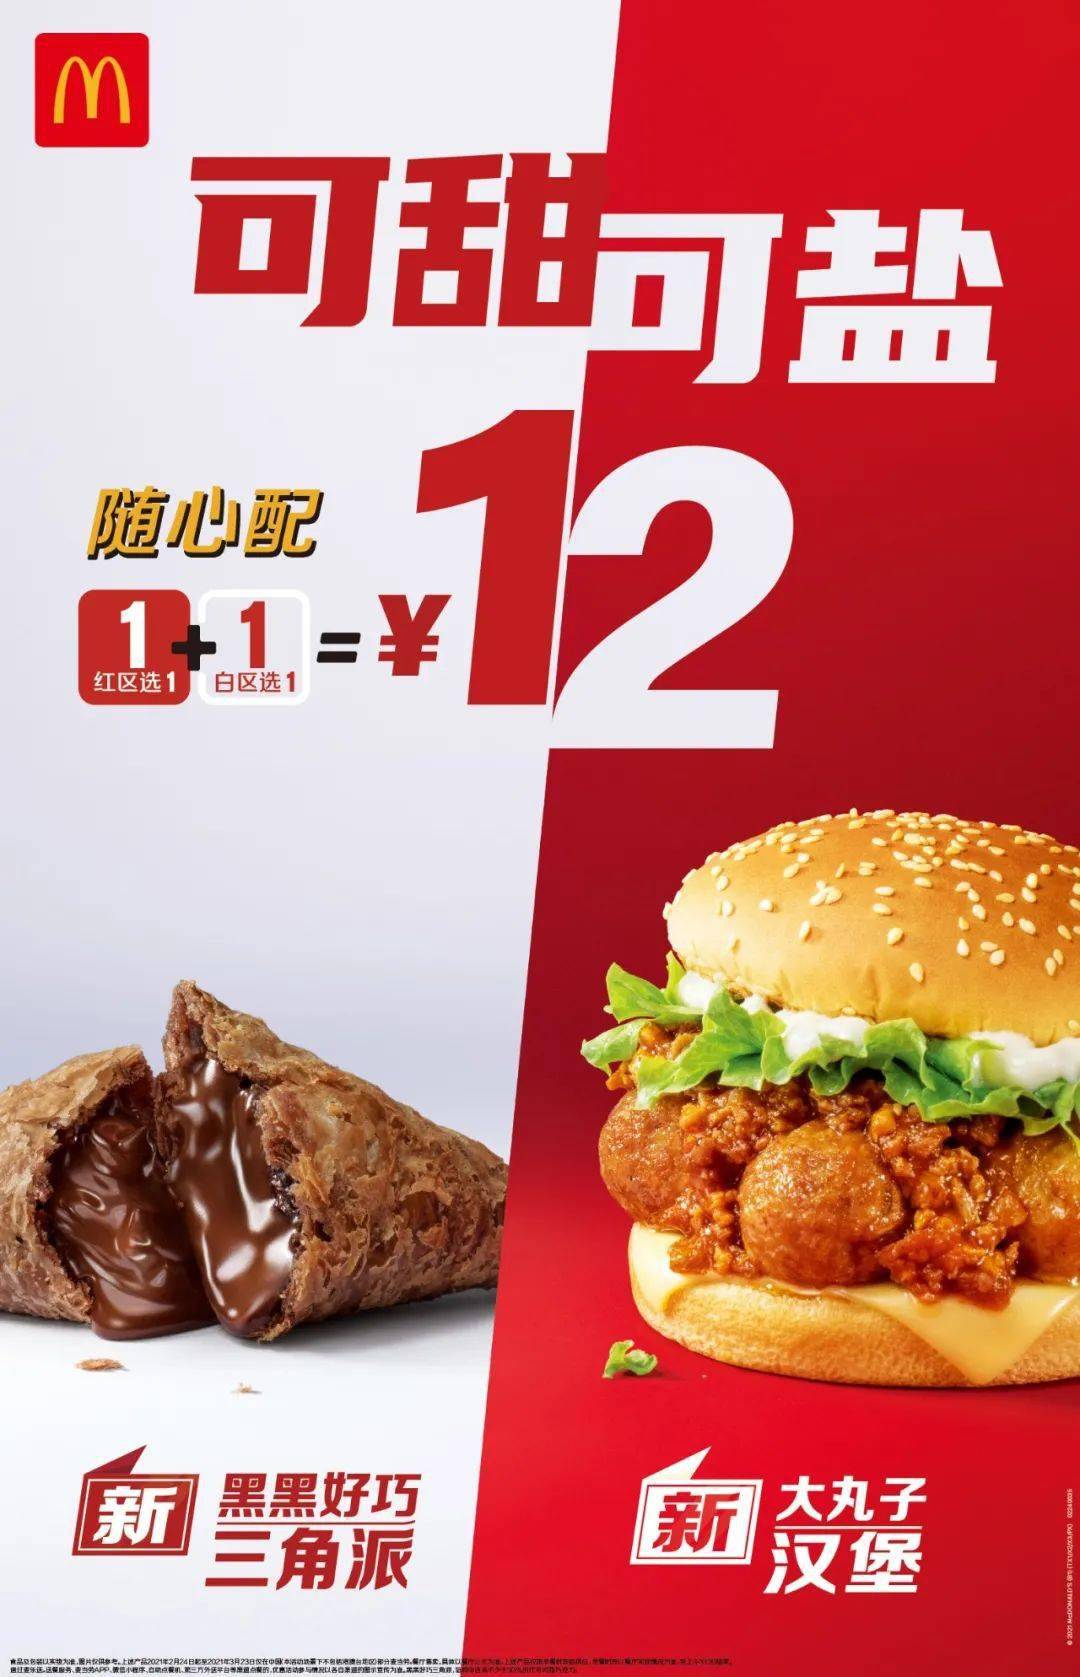 曝光麦当劳随心配1 1新组合!还是只要【12元】!